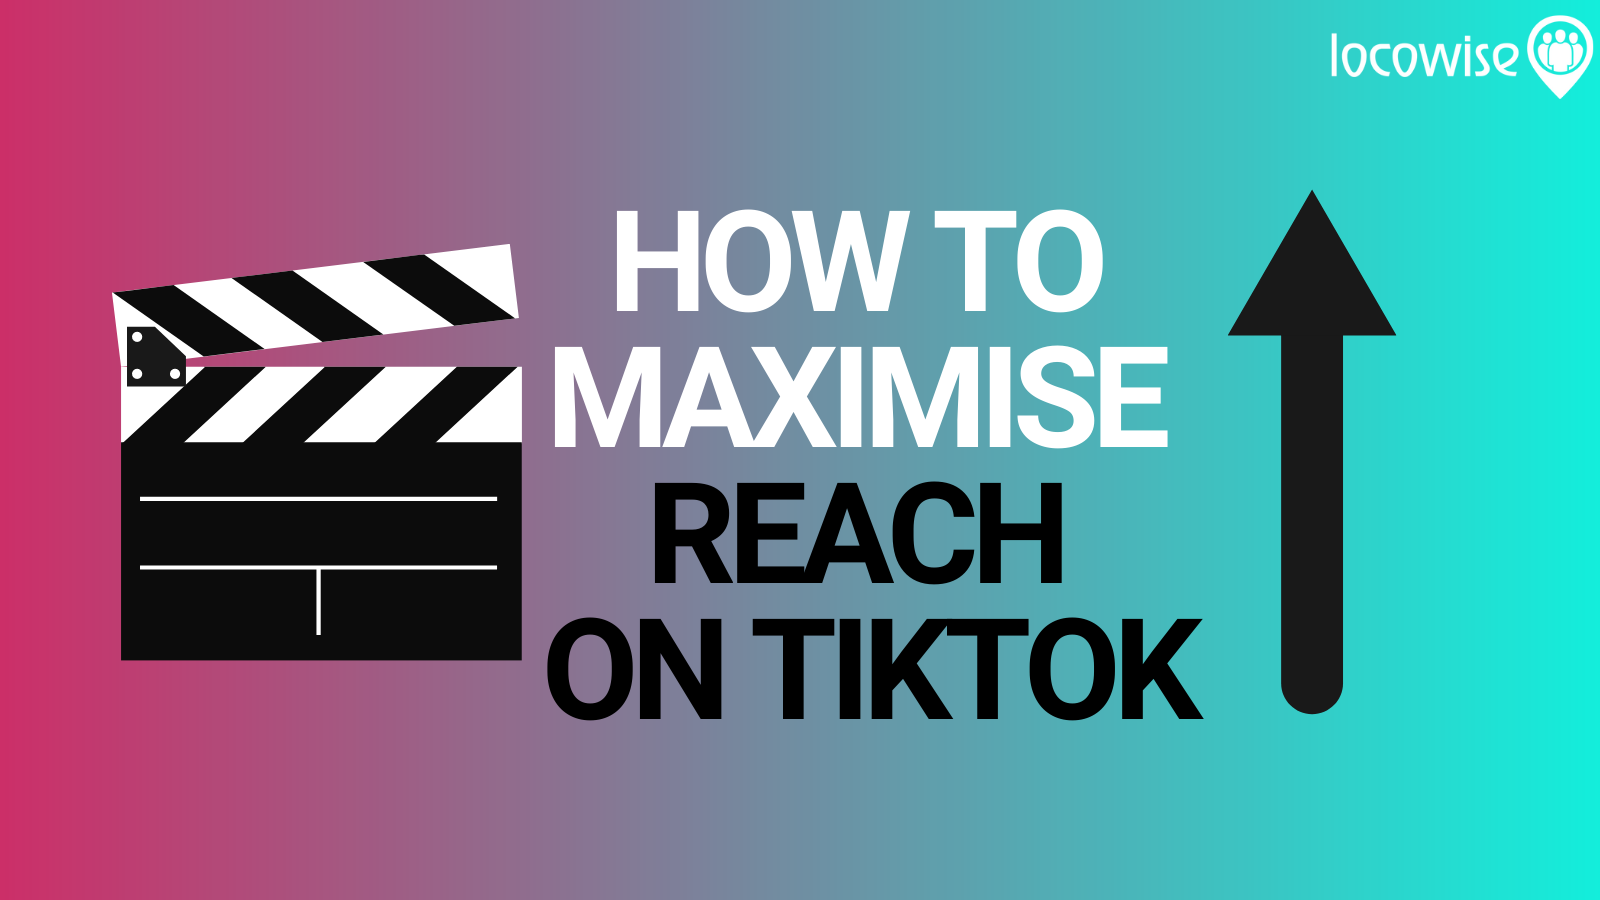 Tips to Maximize Your Reach on TikTok